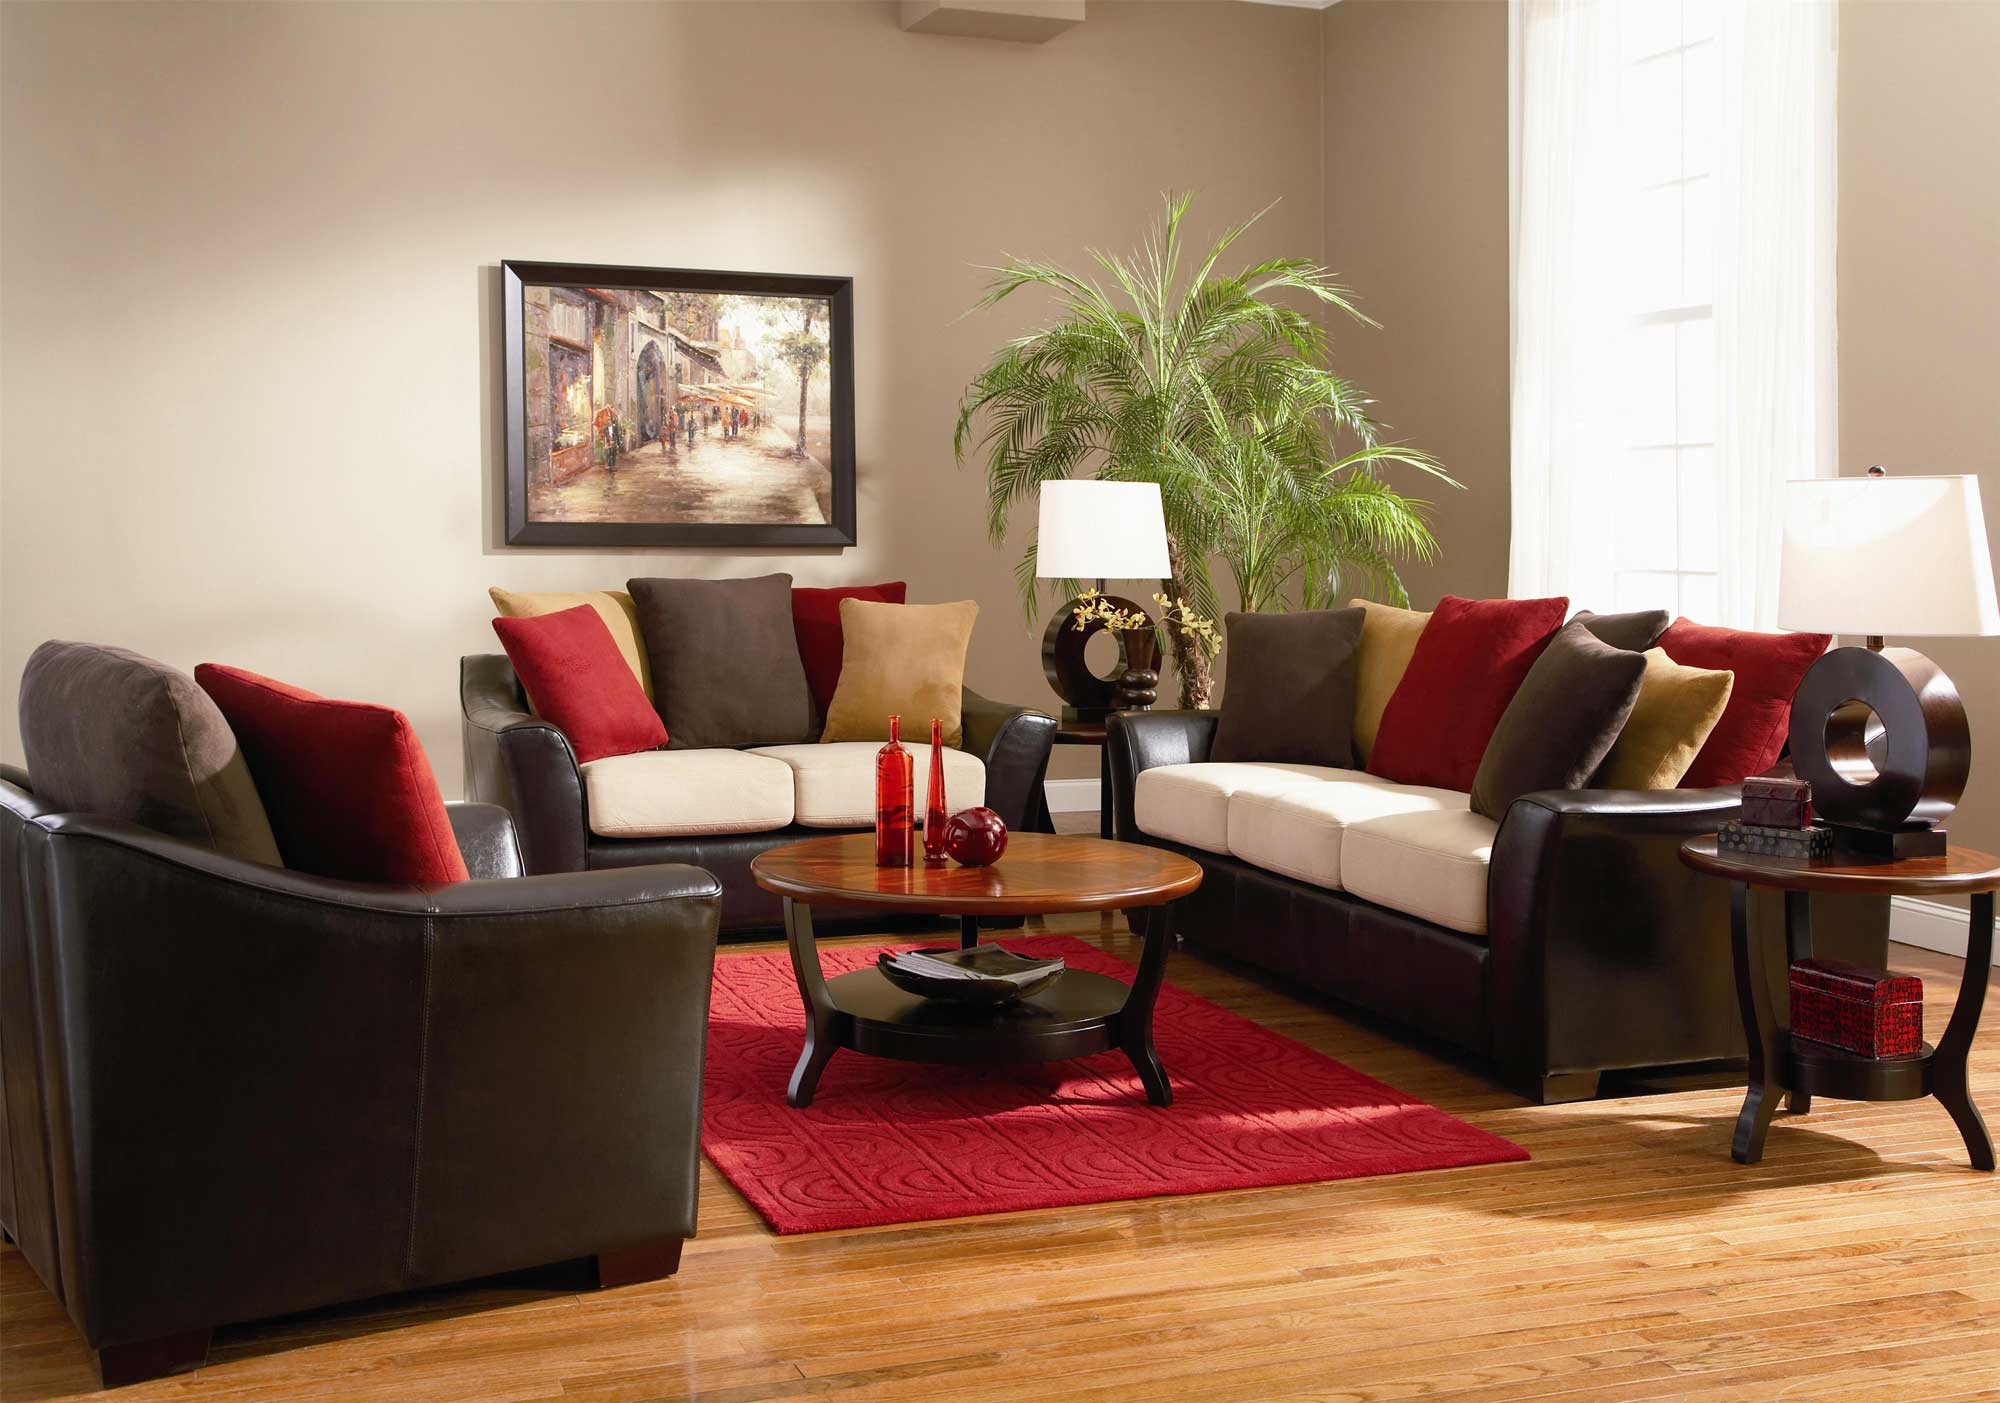 Living Room Rug Sets
 The Best Living Room Furniture Sets Amaza Design